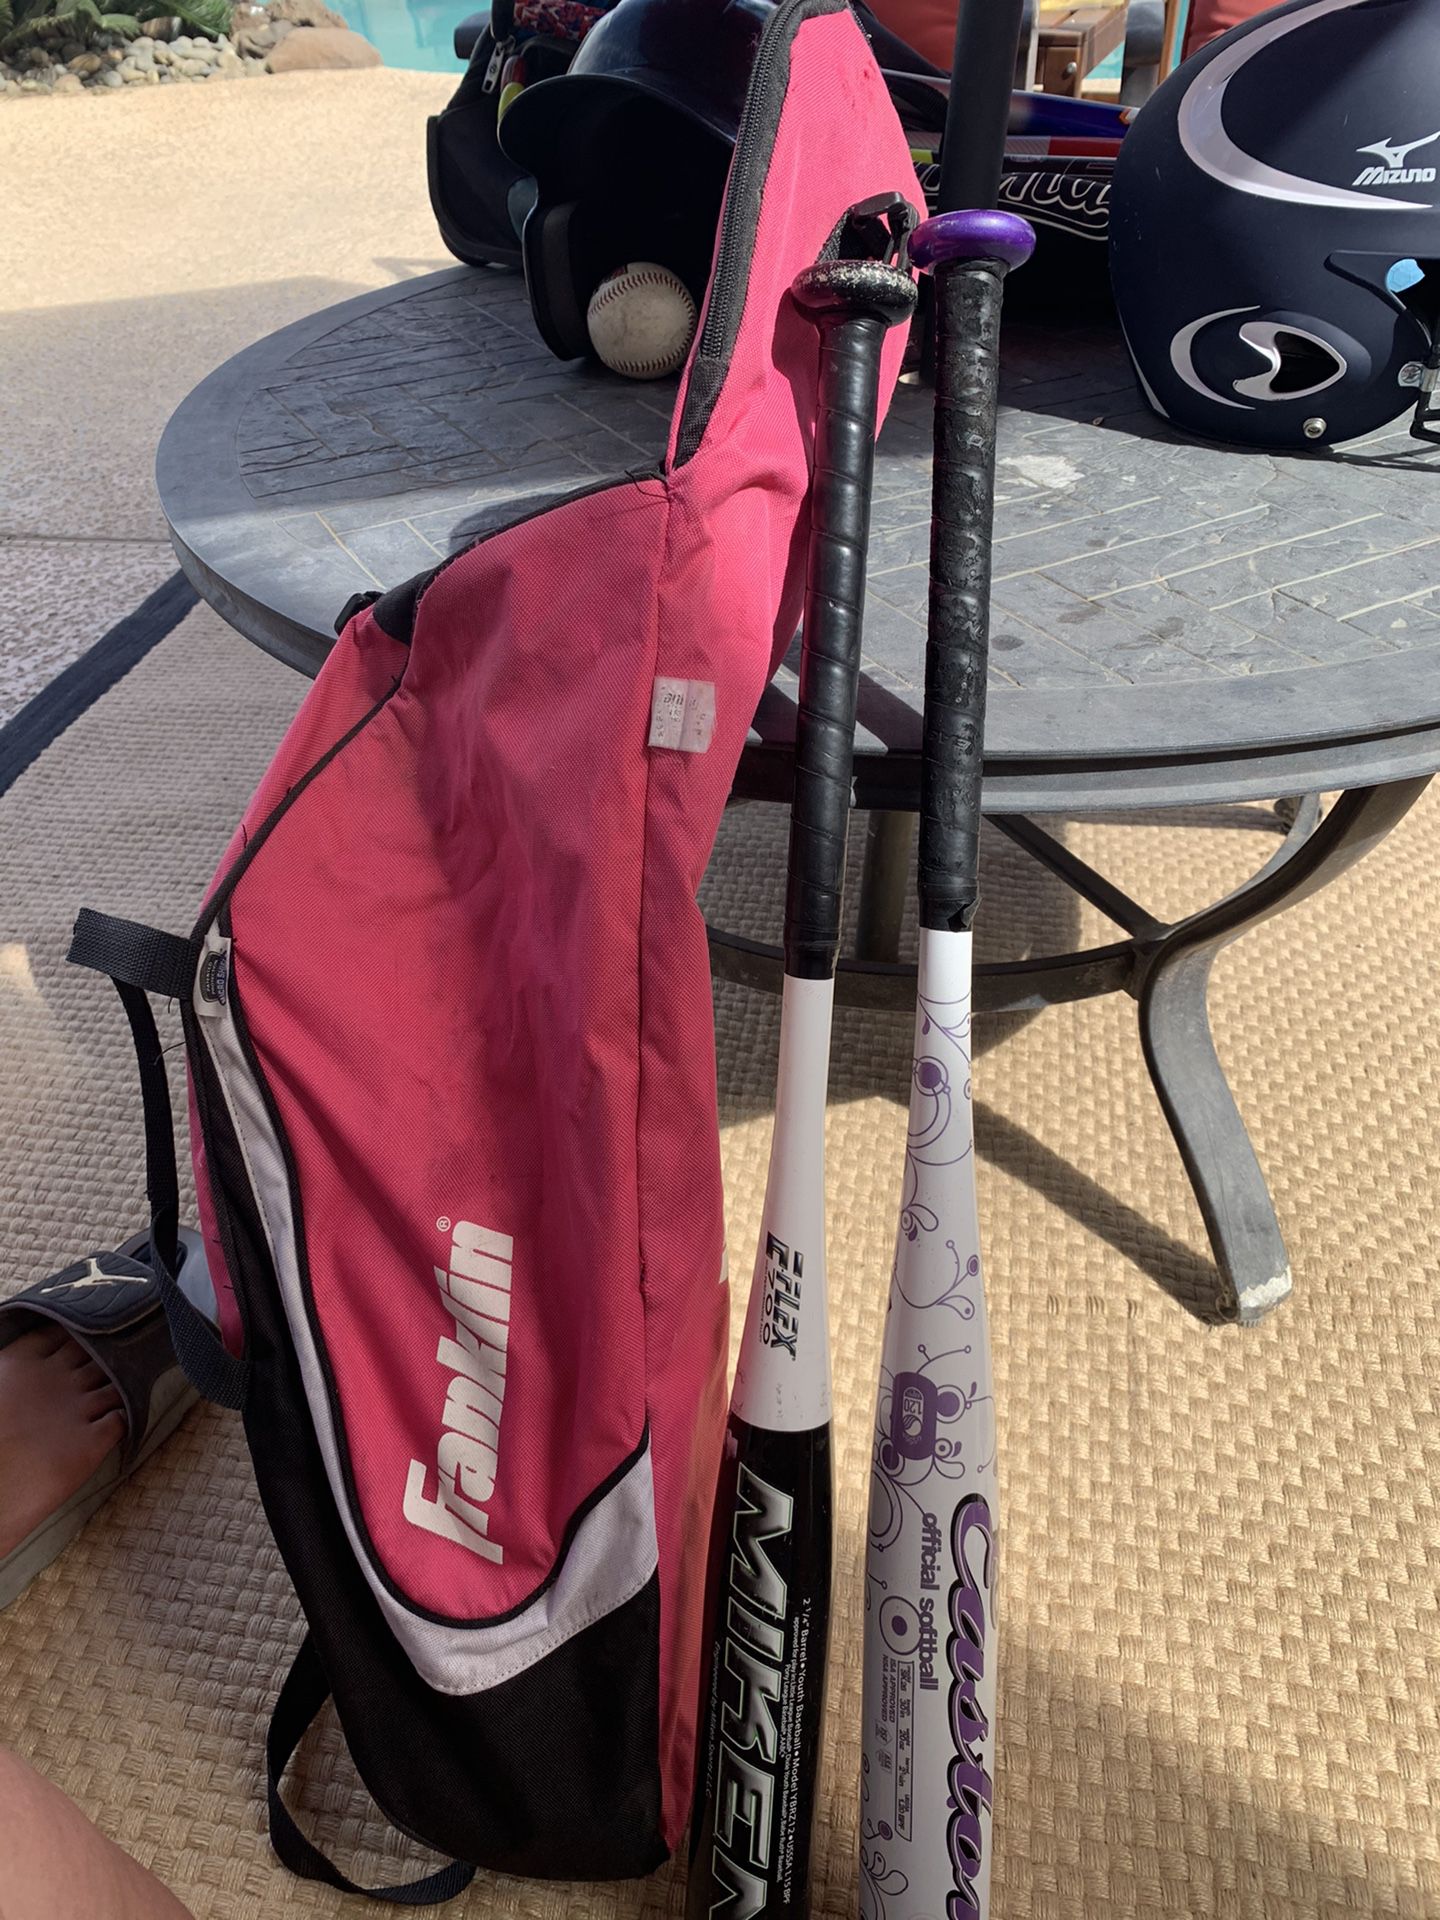 Youth baseball bats x 2 and bag